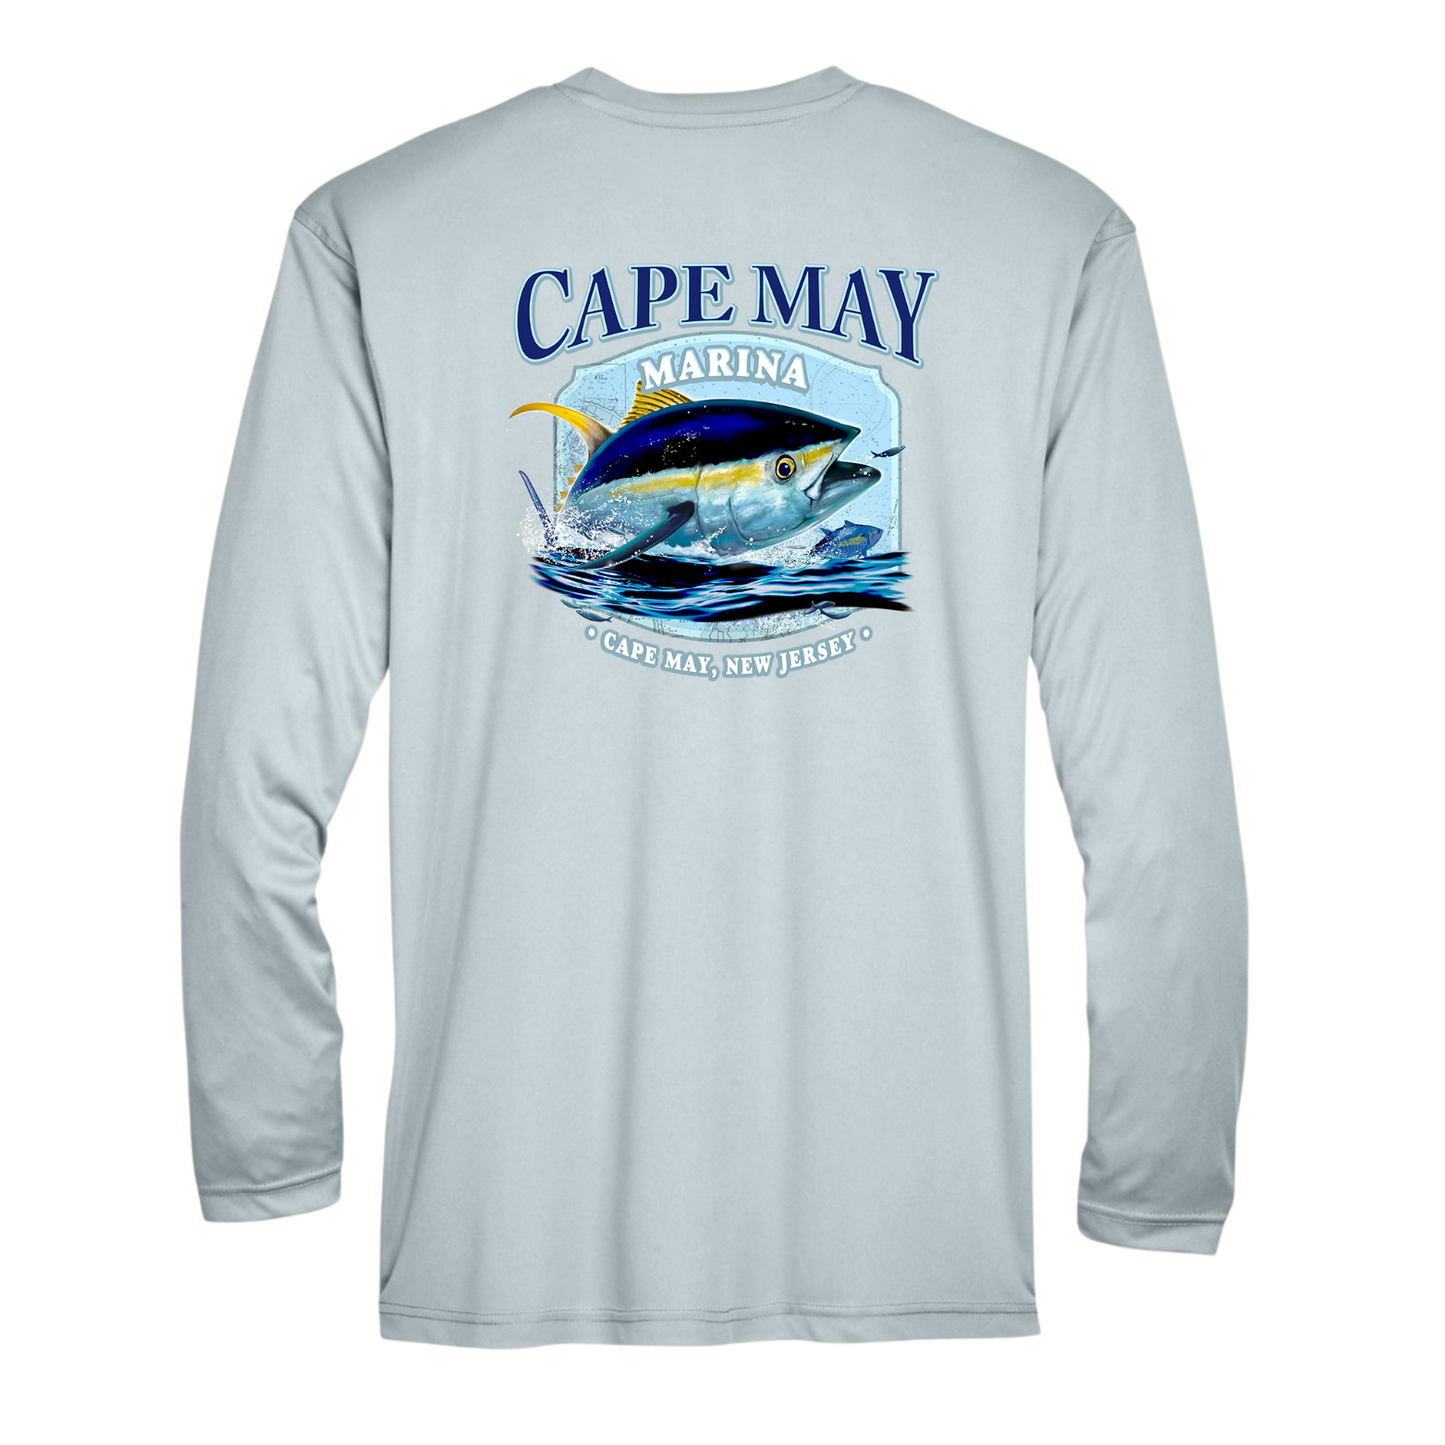 Cape May Marina - Tuna Sun Shirt